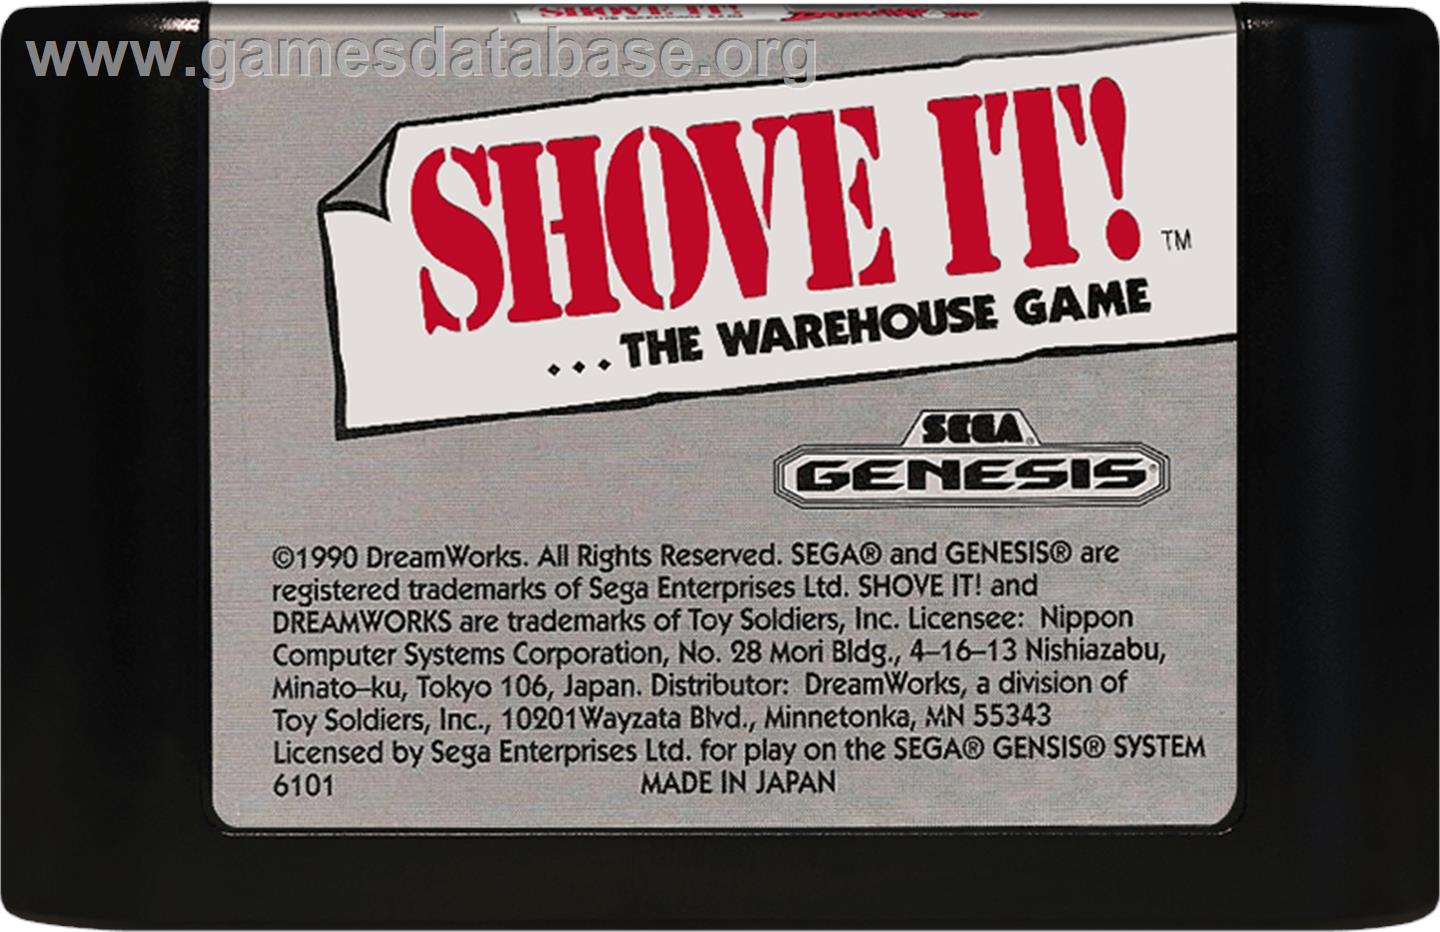 Shove It! The Warehouse Game - Sega Genesis - Artwork - Cartridge